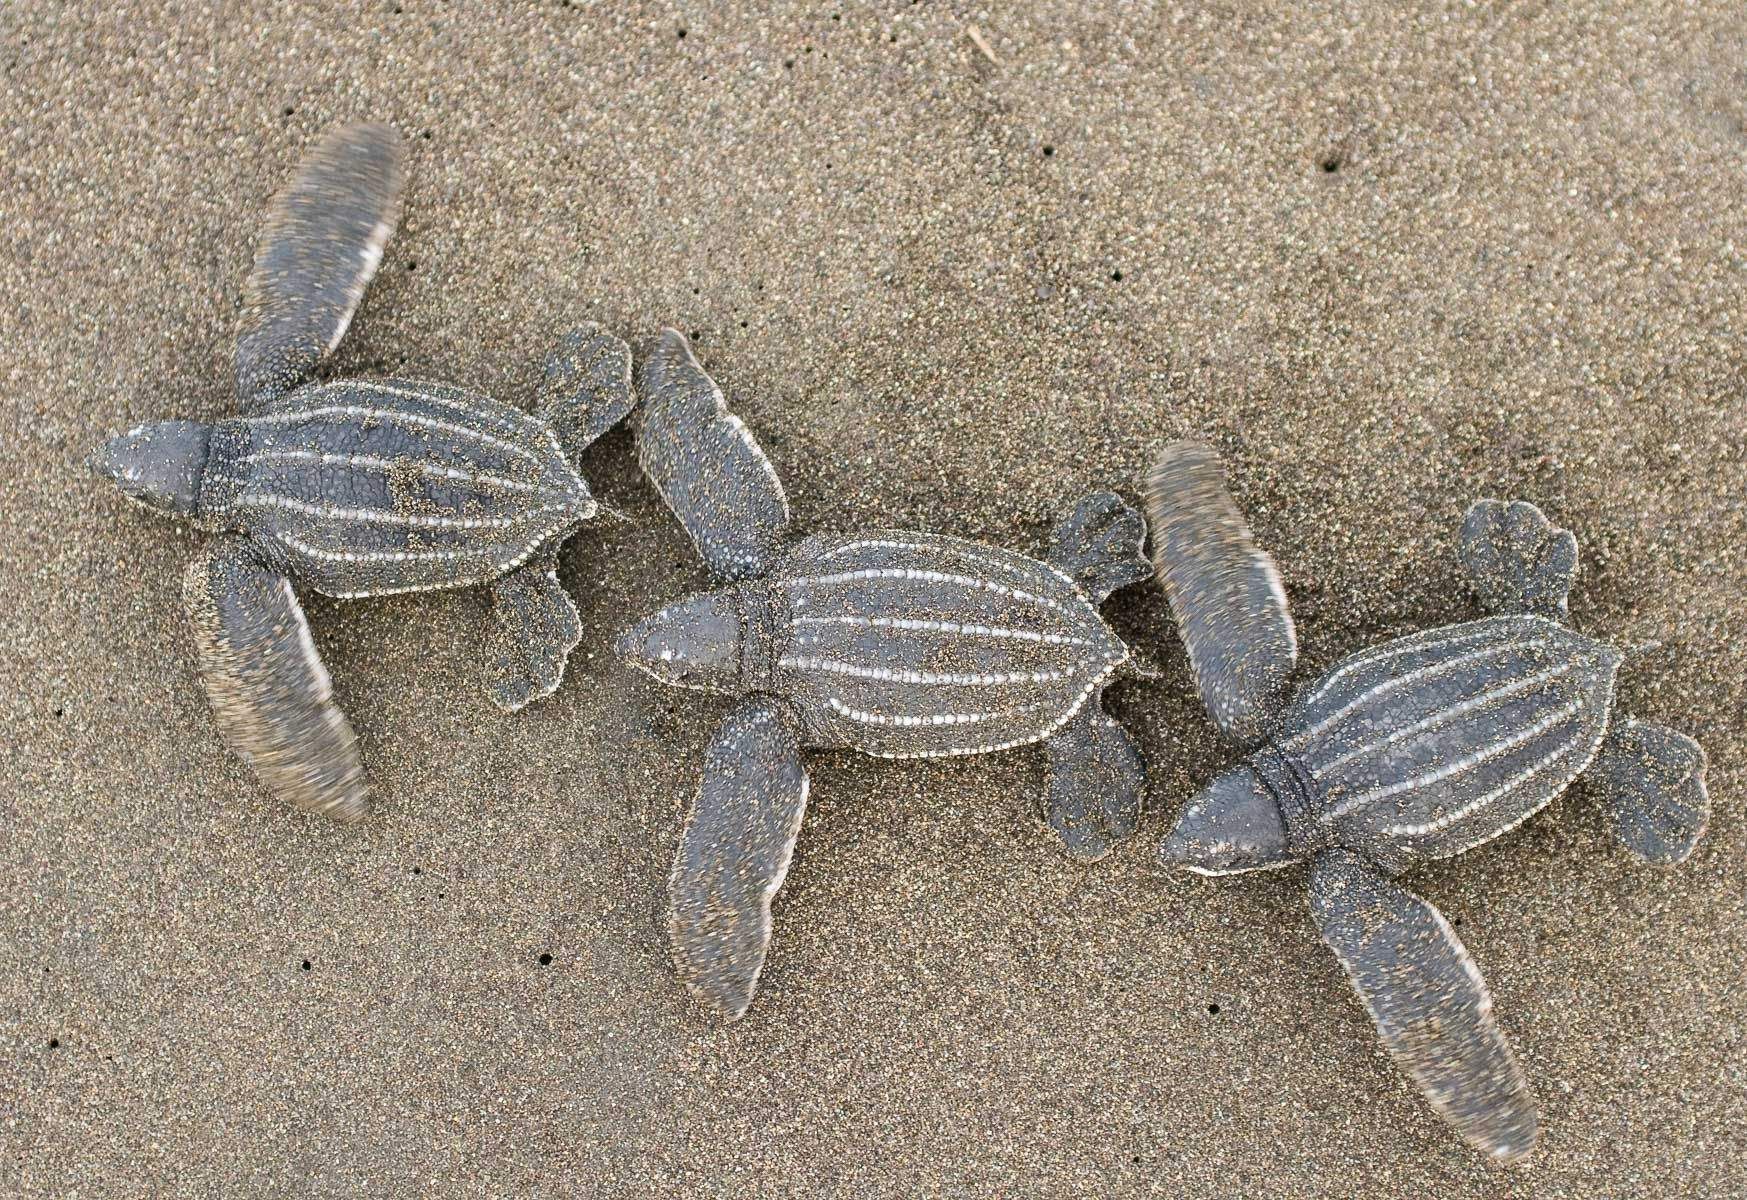 Baby Leatherback Sea Turtles